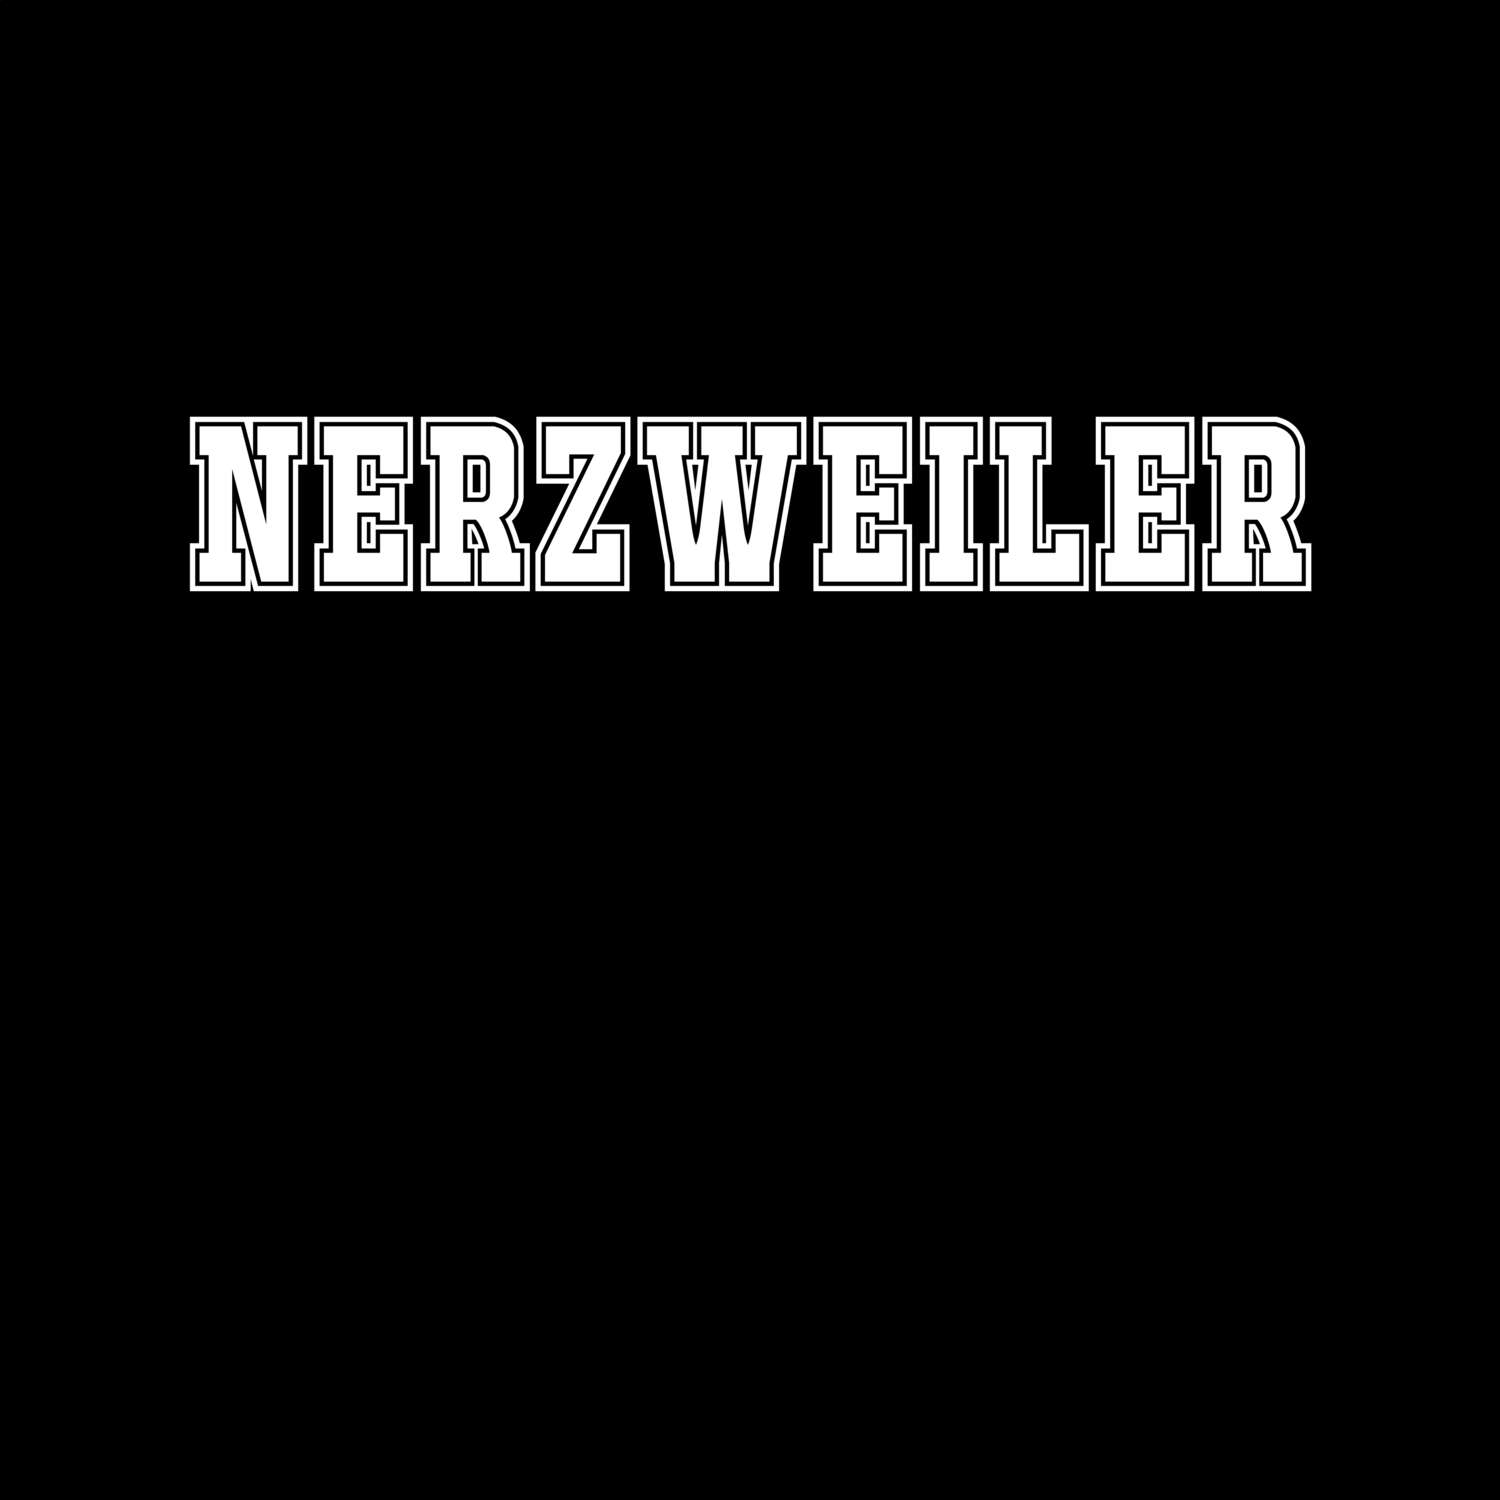 Nerzweiler T-Shirt »Classic«